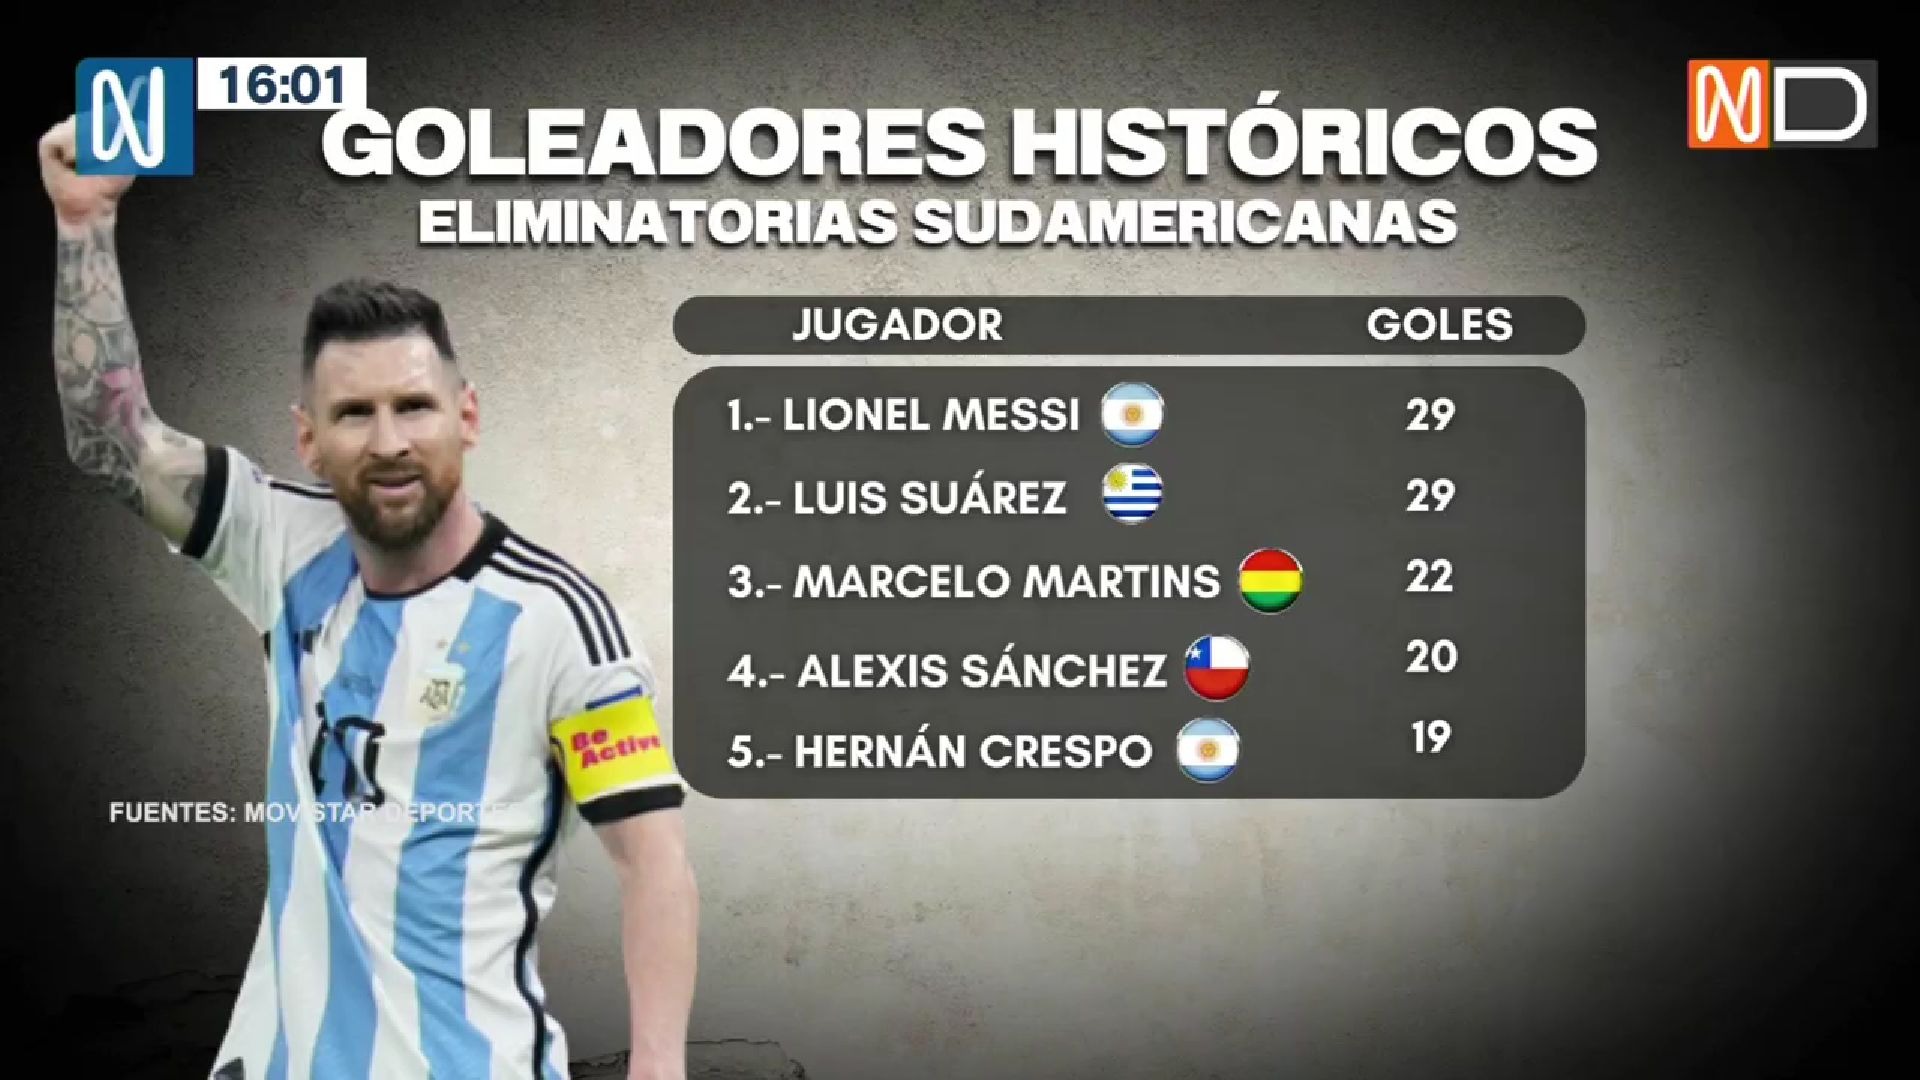 Messi goleador histórico de las Eliminatorias. | Foto: Canal N.